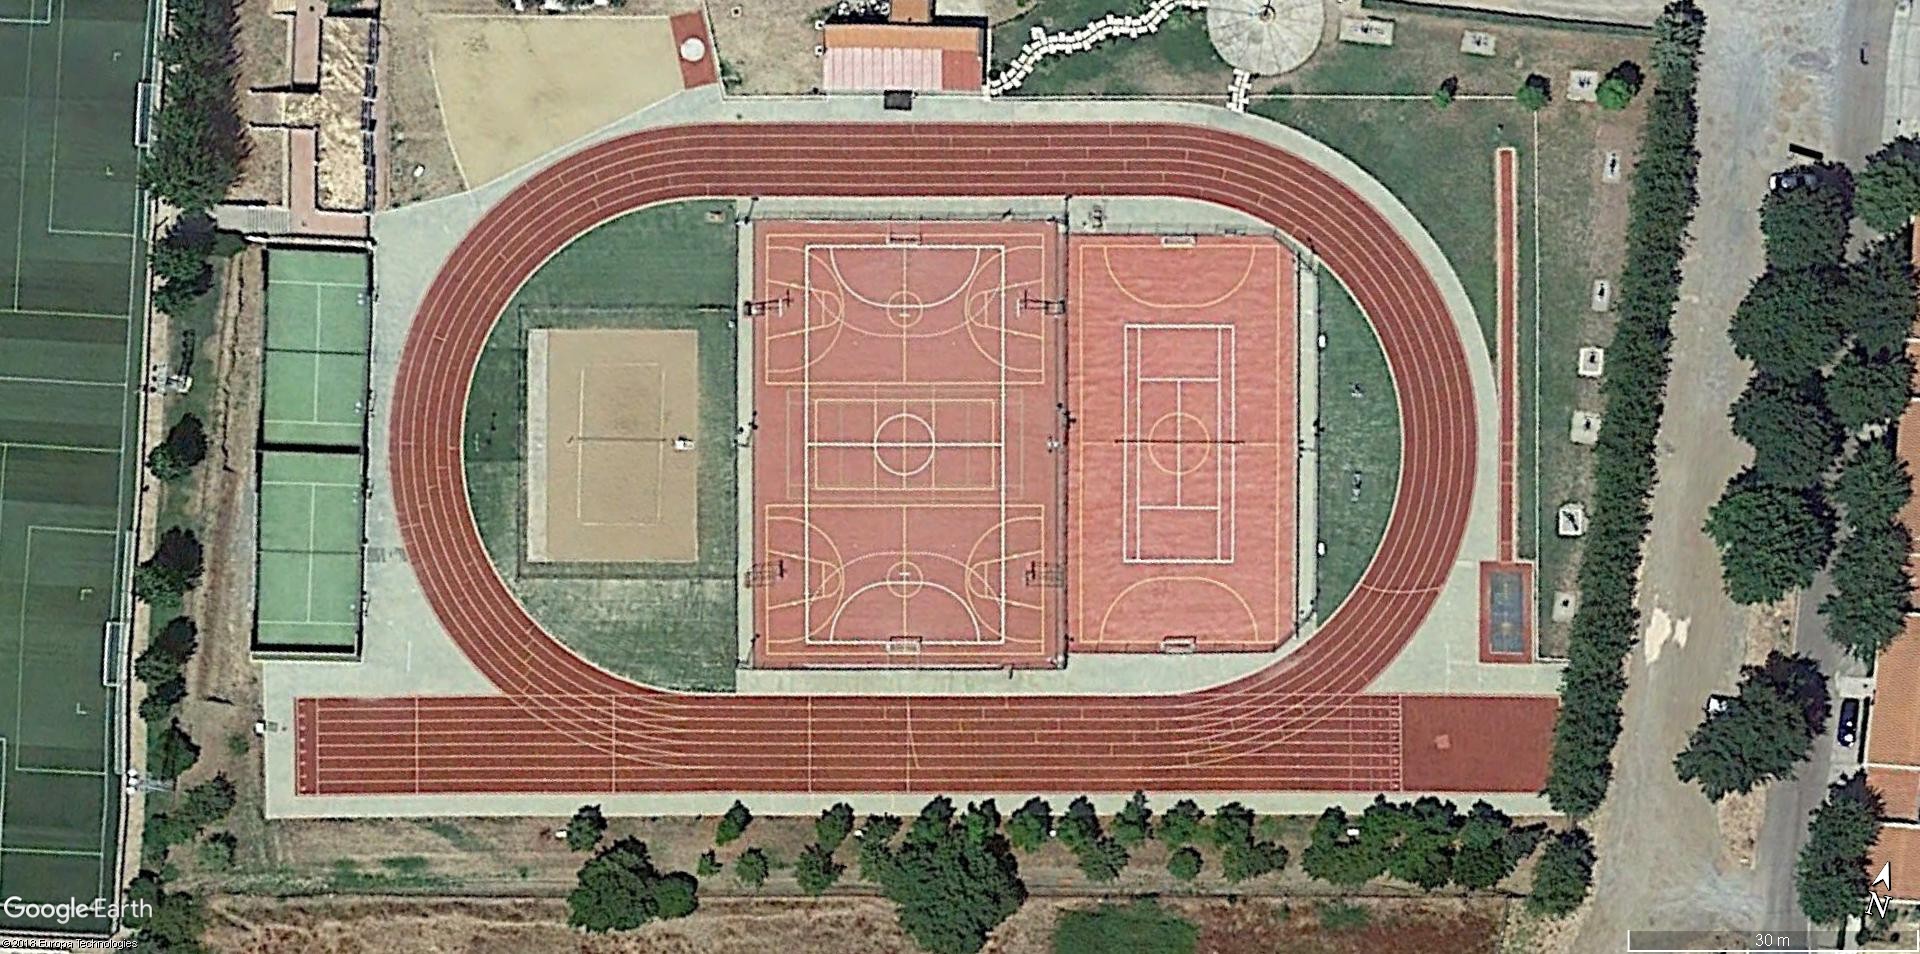 Vista aérea de la pista de atletismo de Aracena, con su actual pavimento.